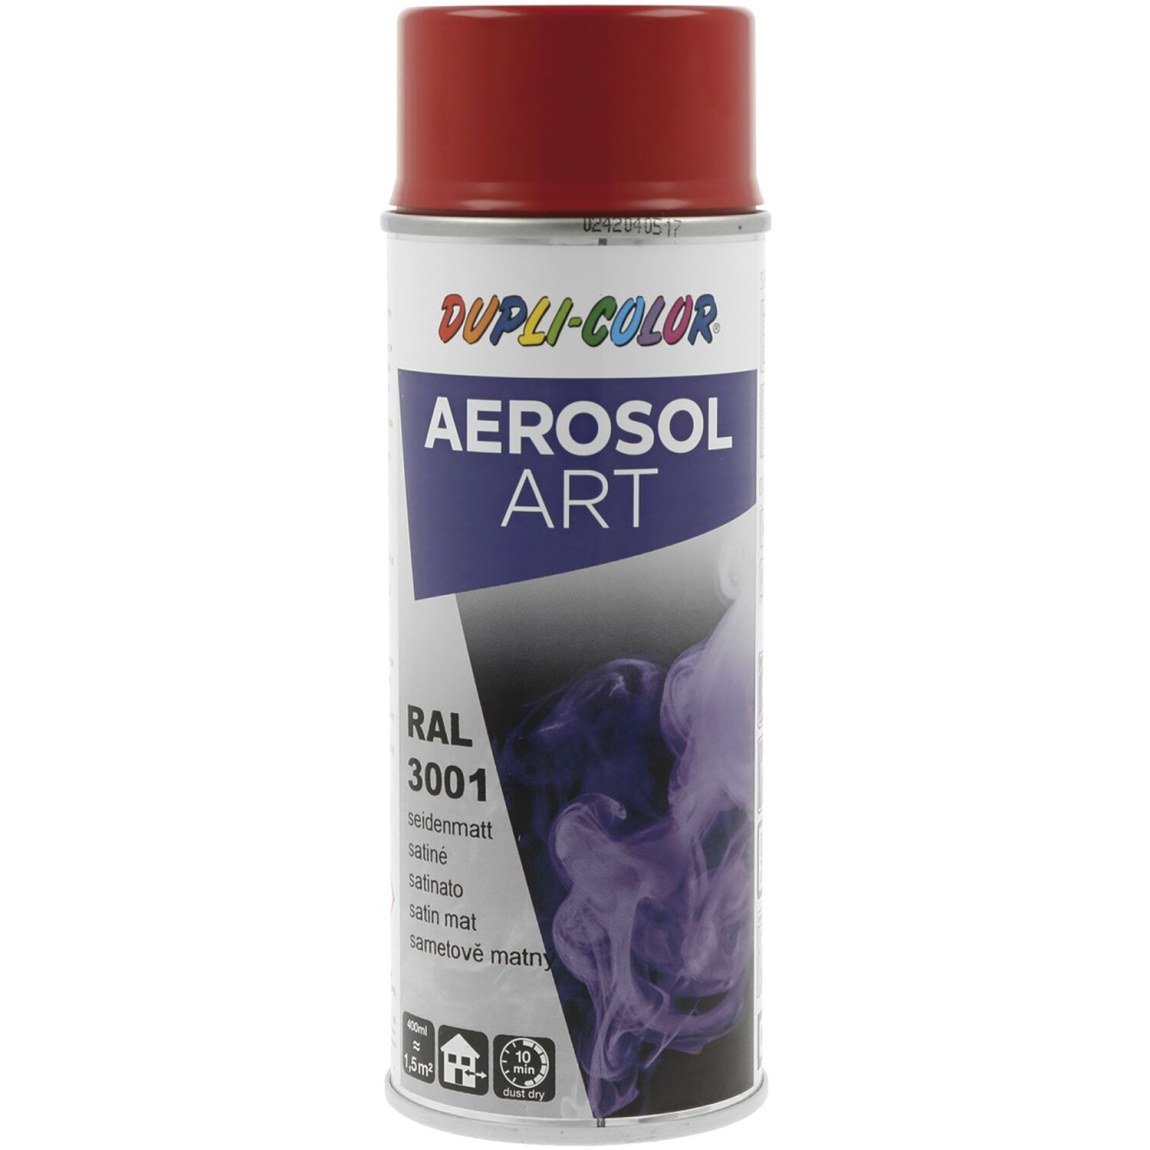 Dupli-Color Aerosol Art sprej 400 ml signální červená hedv.mat / RAL 3001 - Železářství Chemicko-technické výrobky Technické aerosoly Lak ve Spreji